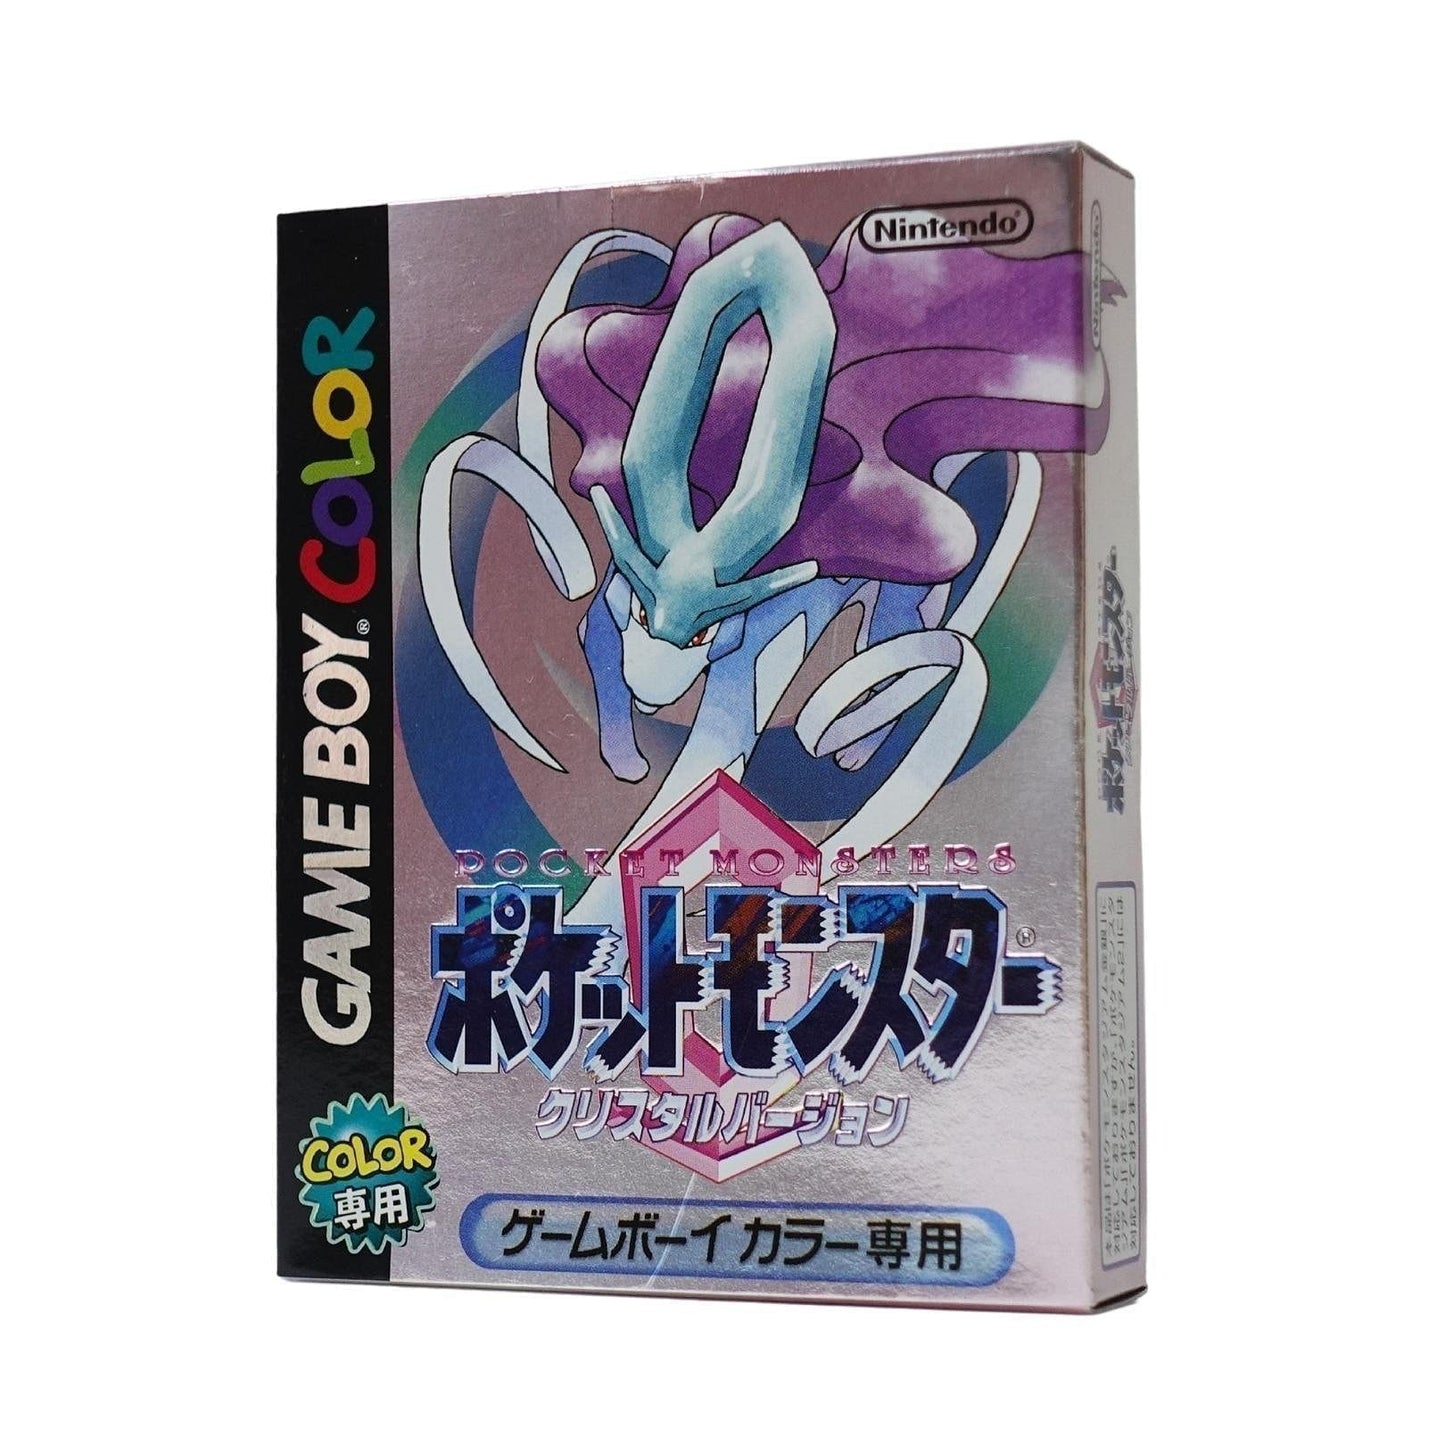 Pokémon Cristal l GameBoy Color | Japonais ChitoroShop